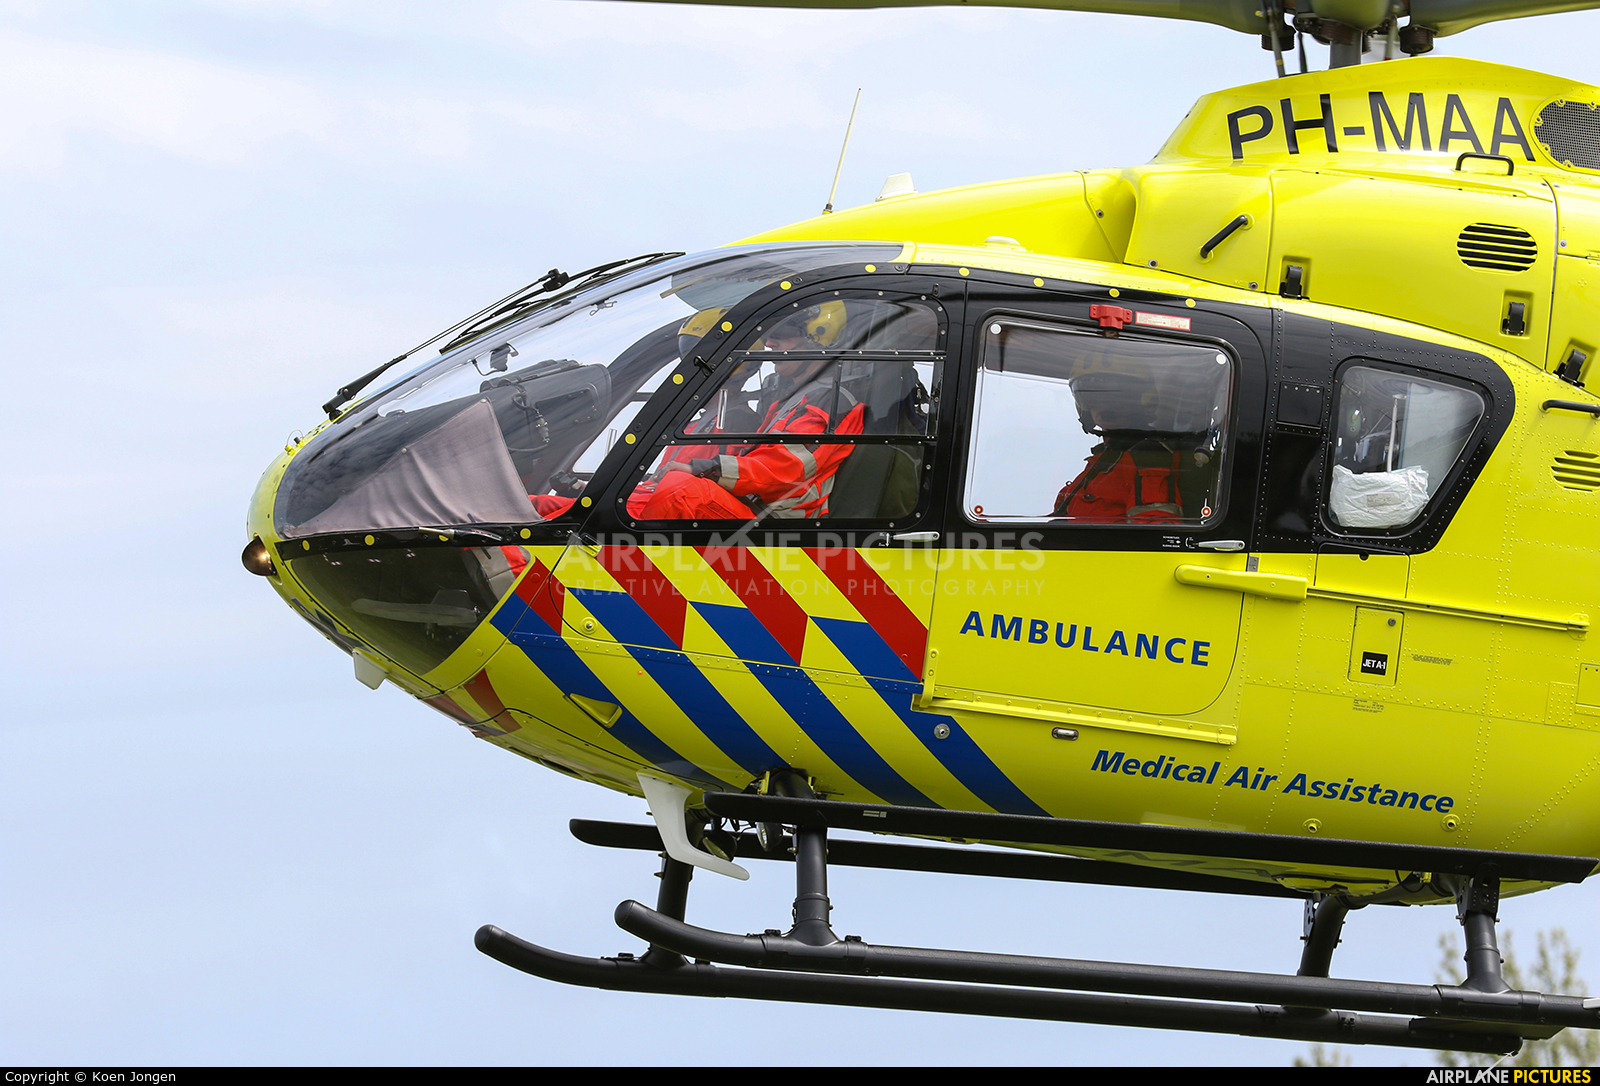 ANWB Medical Air Assistance PH-MAA aircraft at Amsterdam Heliport